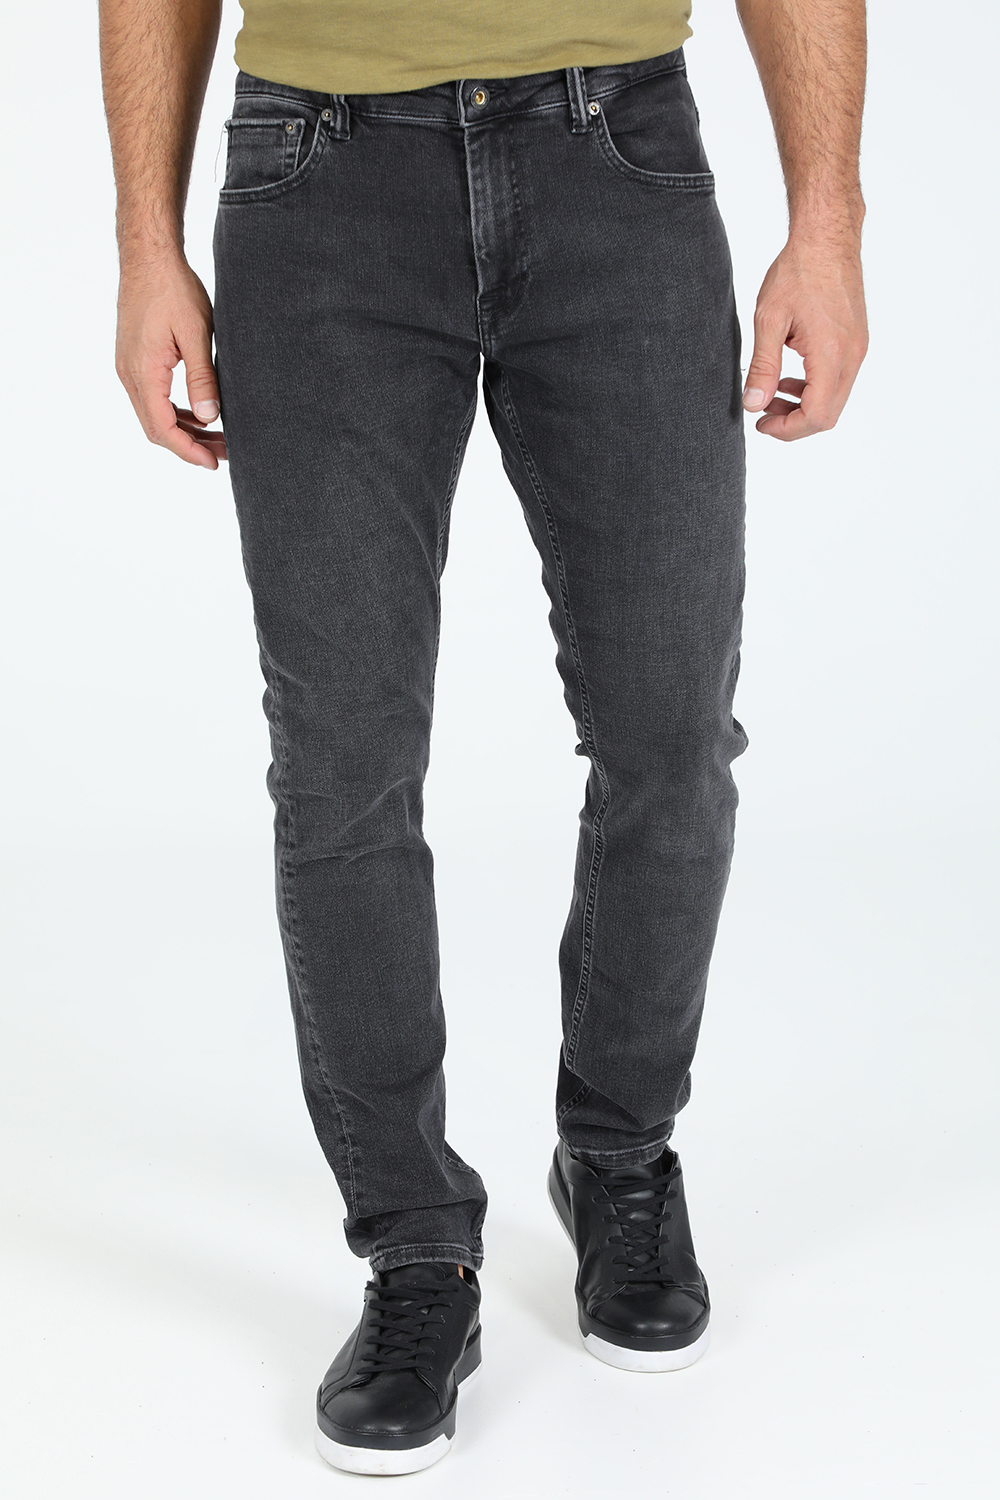 Ανδρικά/Ρούχα/Τζίν/Skinny GABBA - Ανδρικό jean παντελόνι GABBA Jones K4201 μαύρο